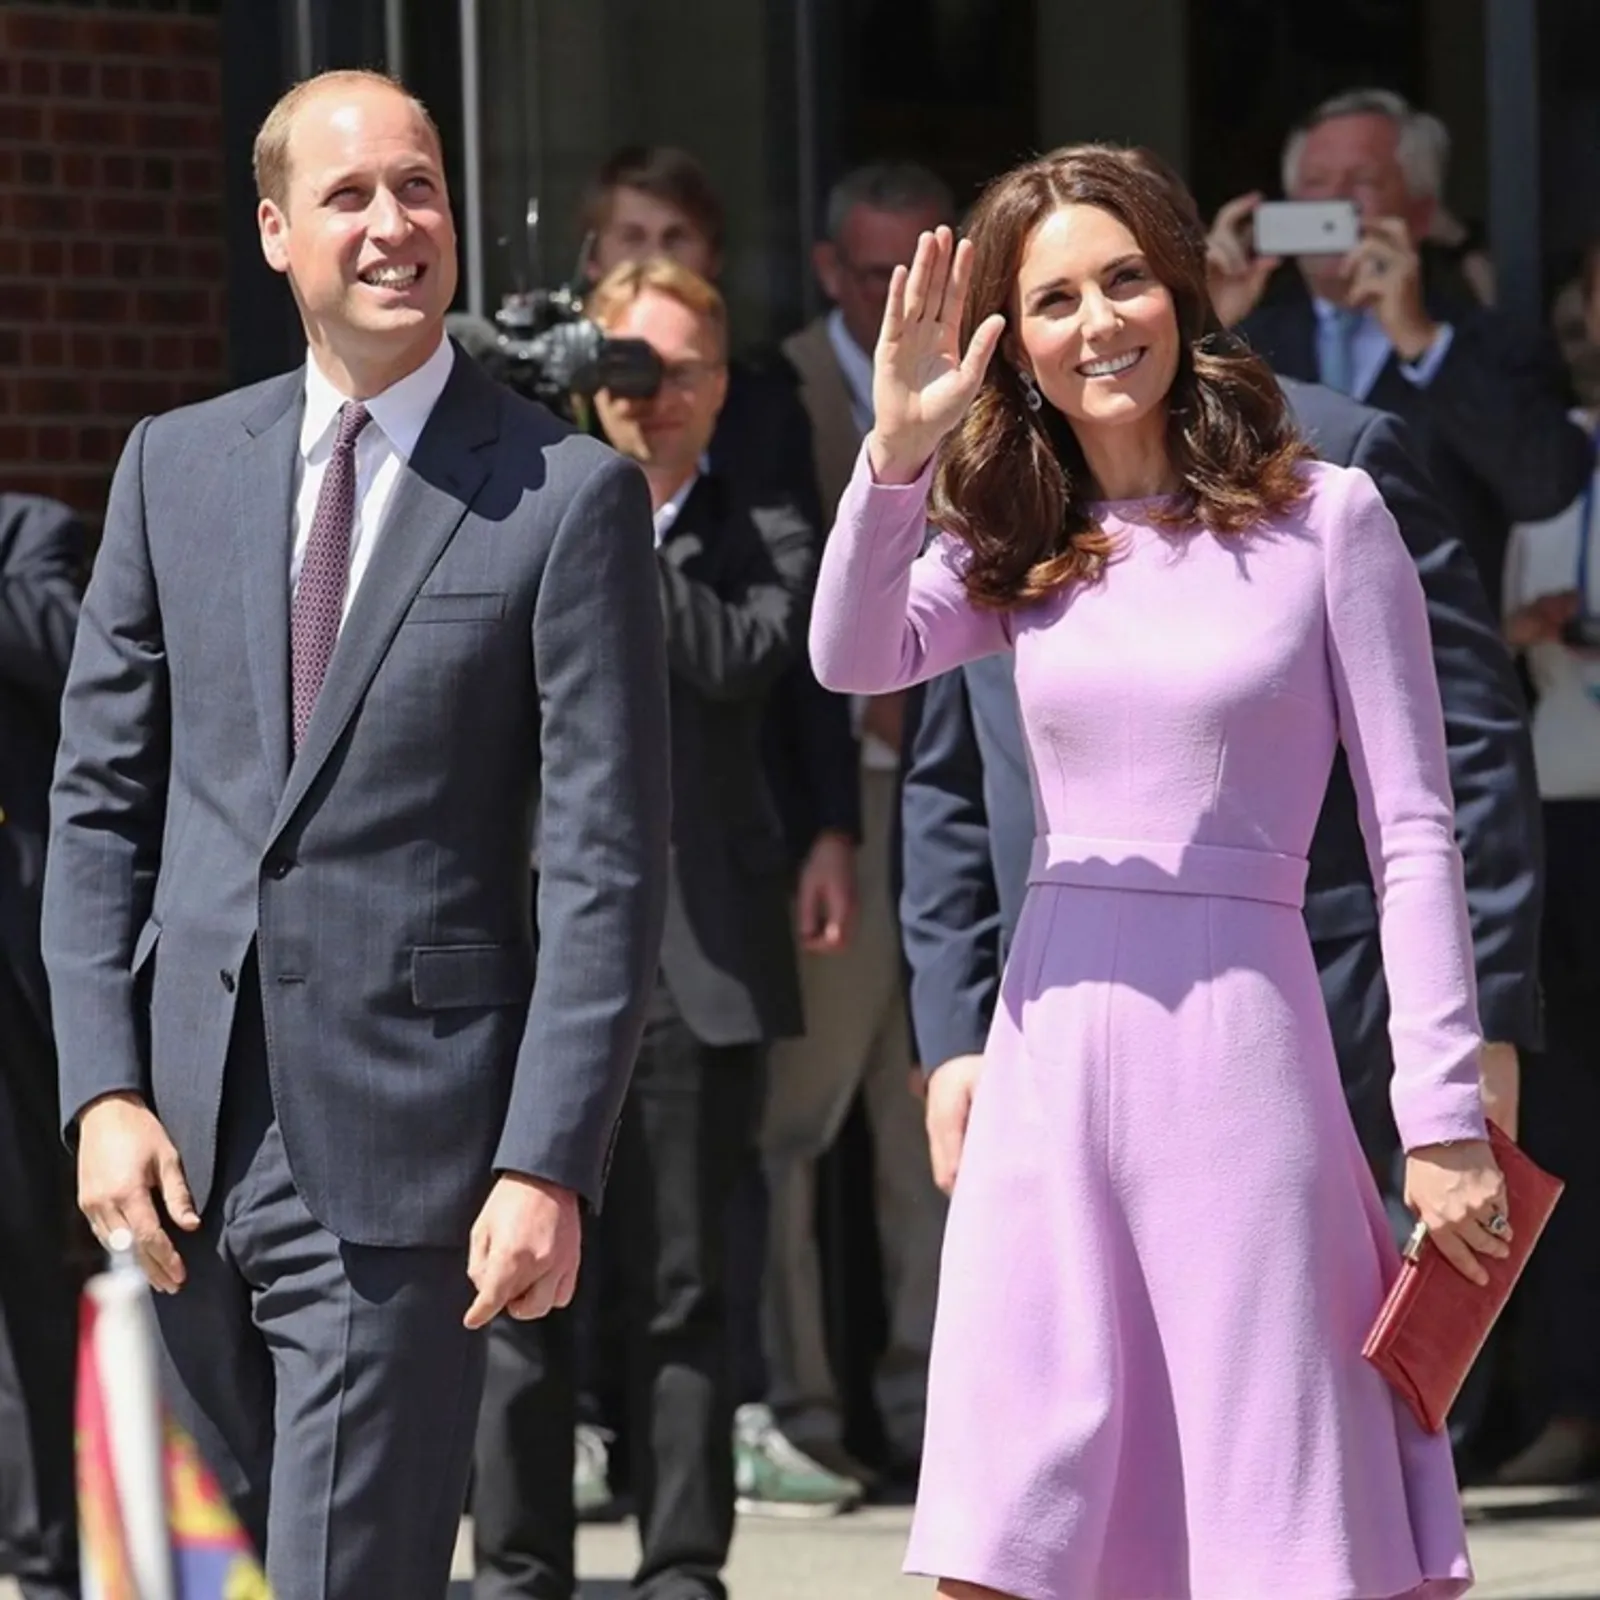 Pasangan Panutan! 10 Potret Harmonis Pangeran William & Kate Middleton